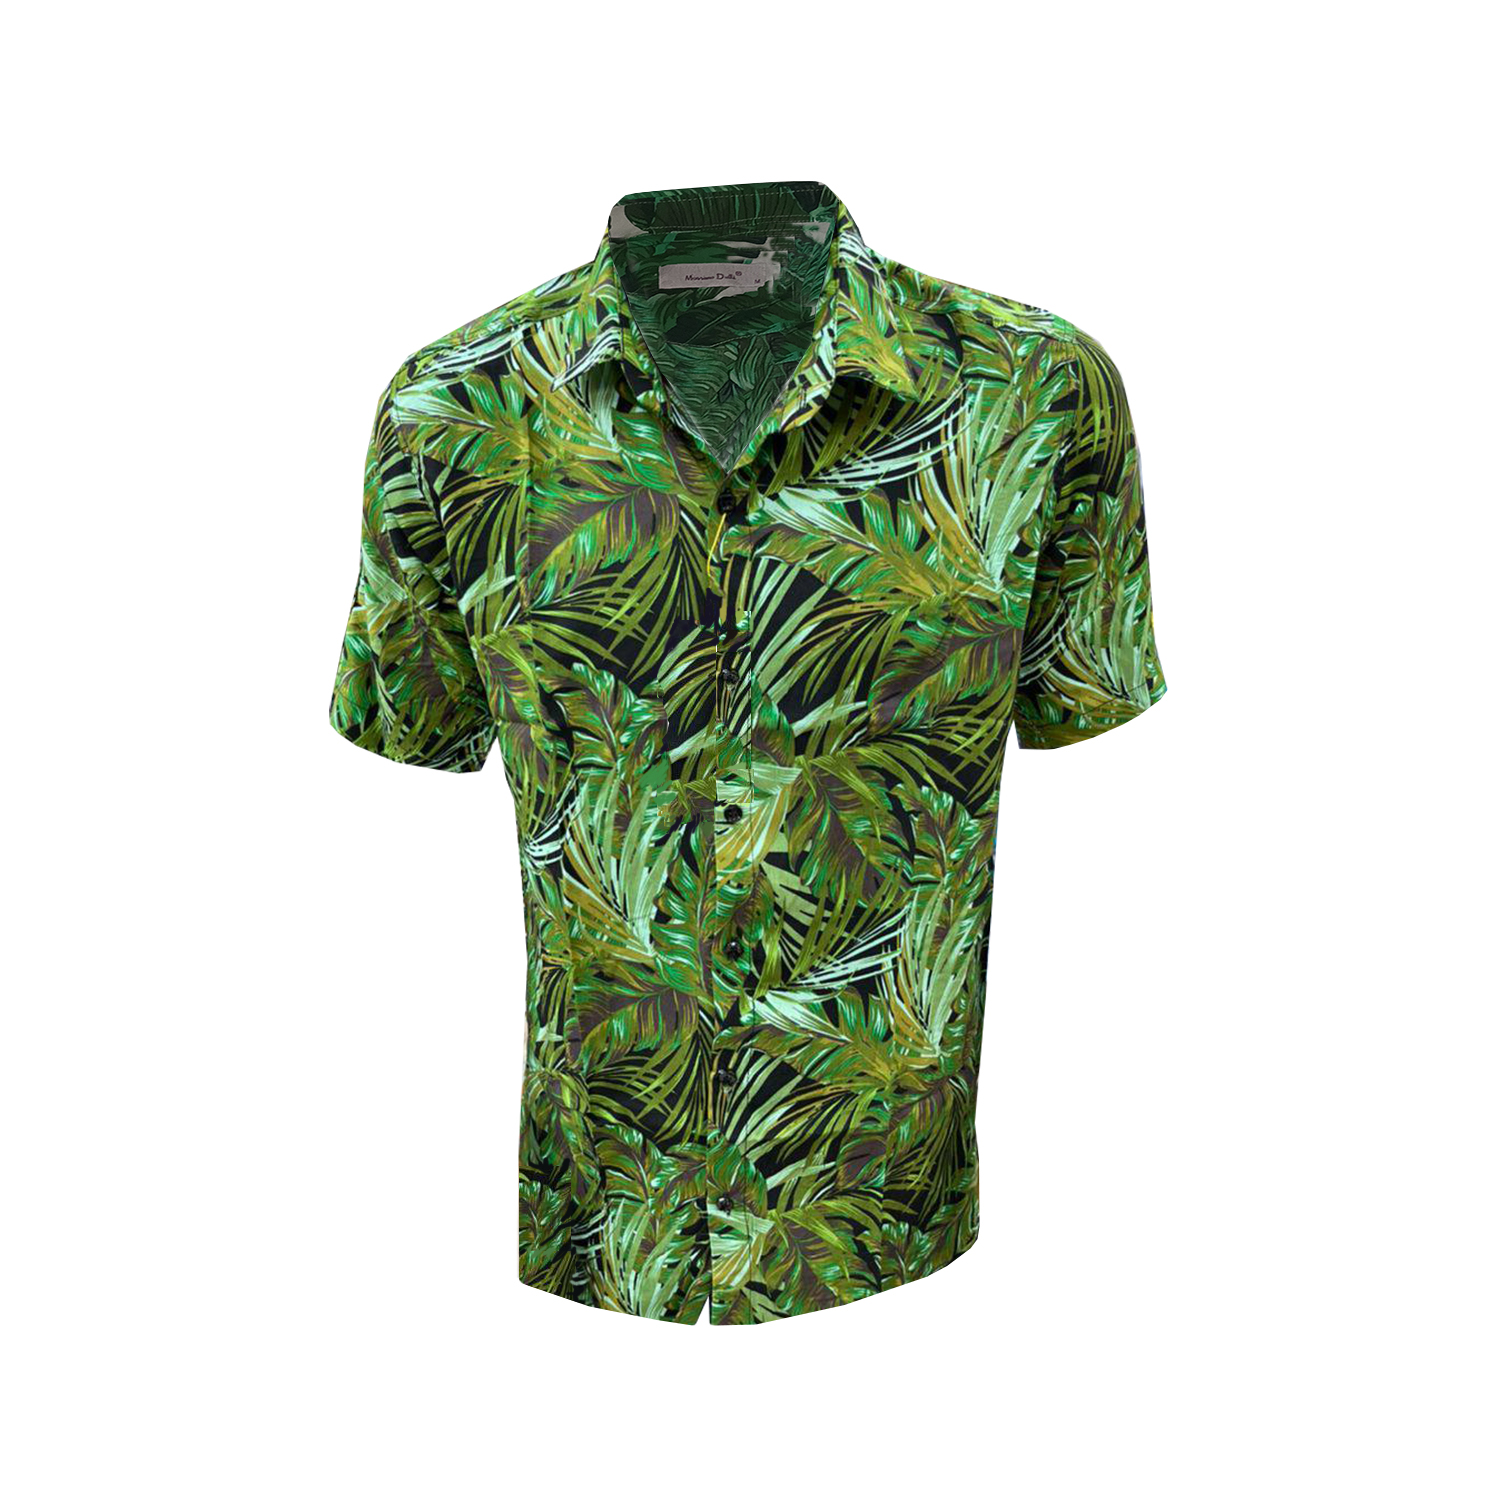 نکته خرید - قیمت روز پیراهن آستین کوتاه مردانه مدل هاوایی کد H-GR-BL خرید